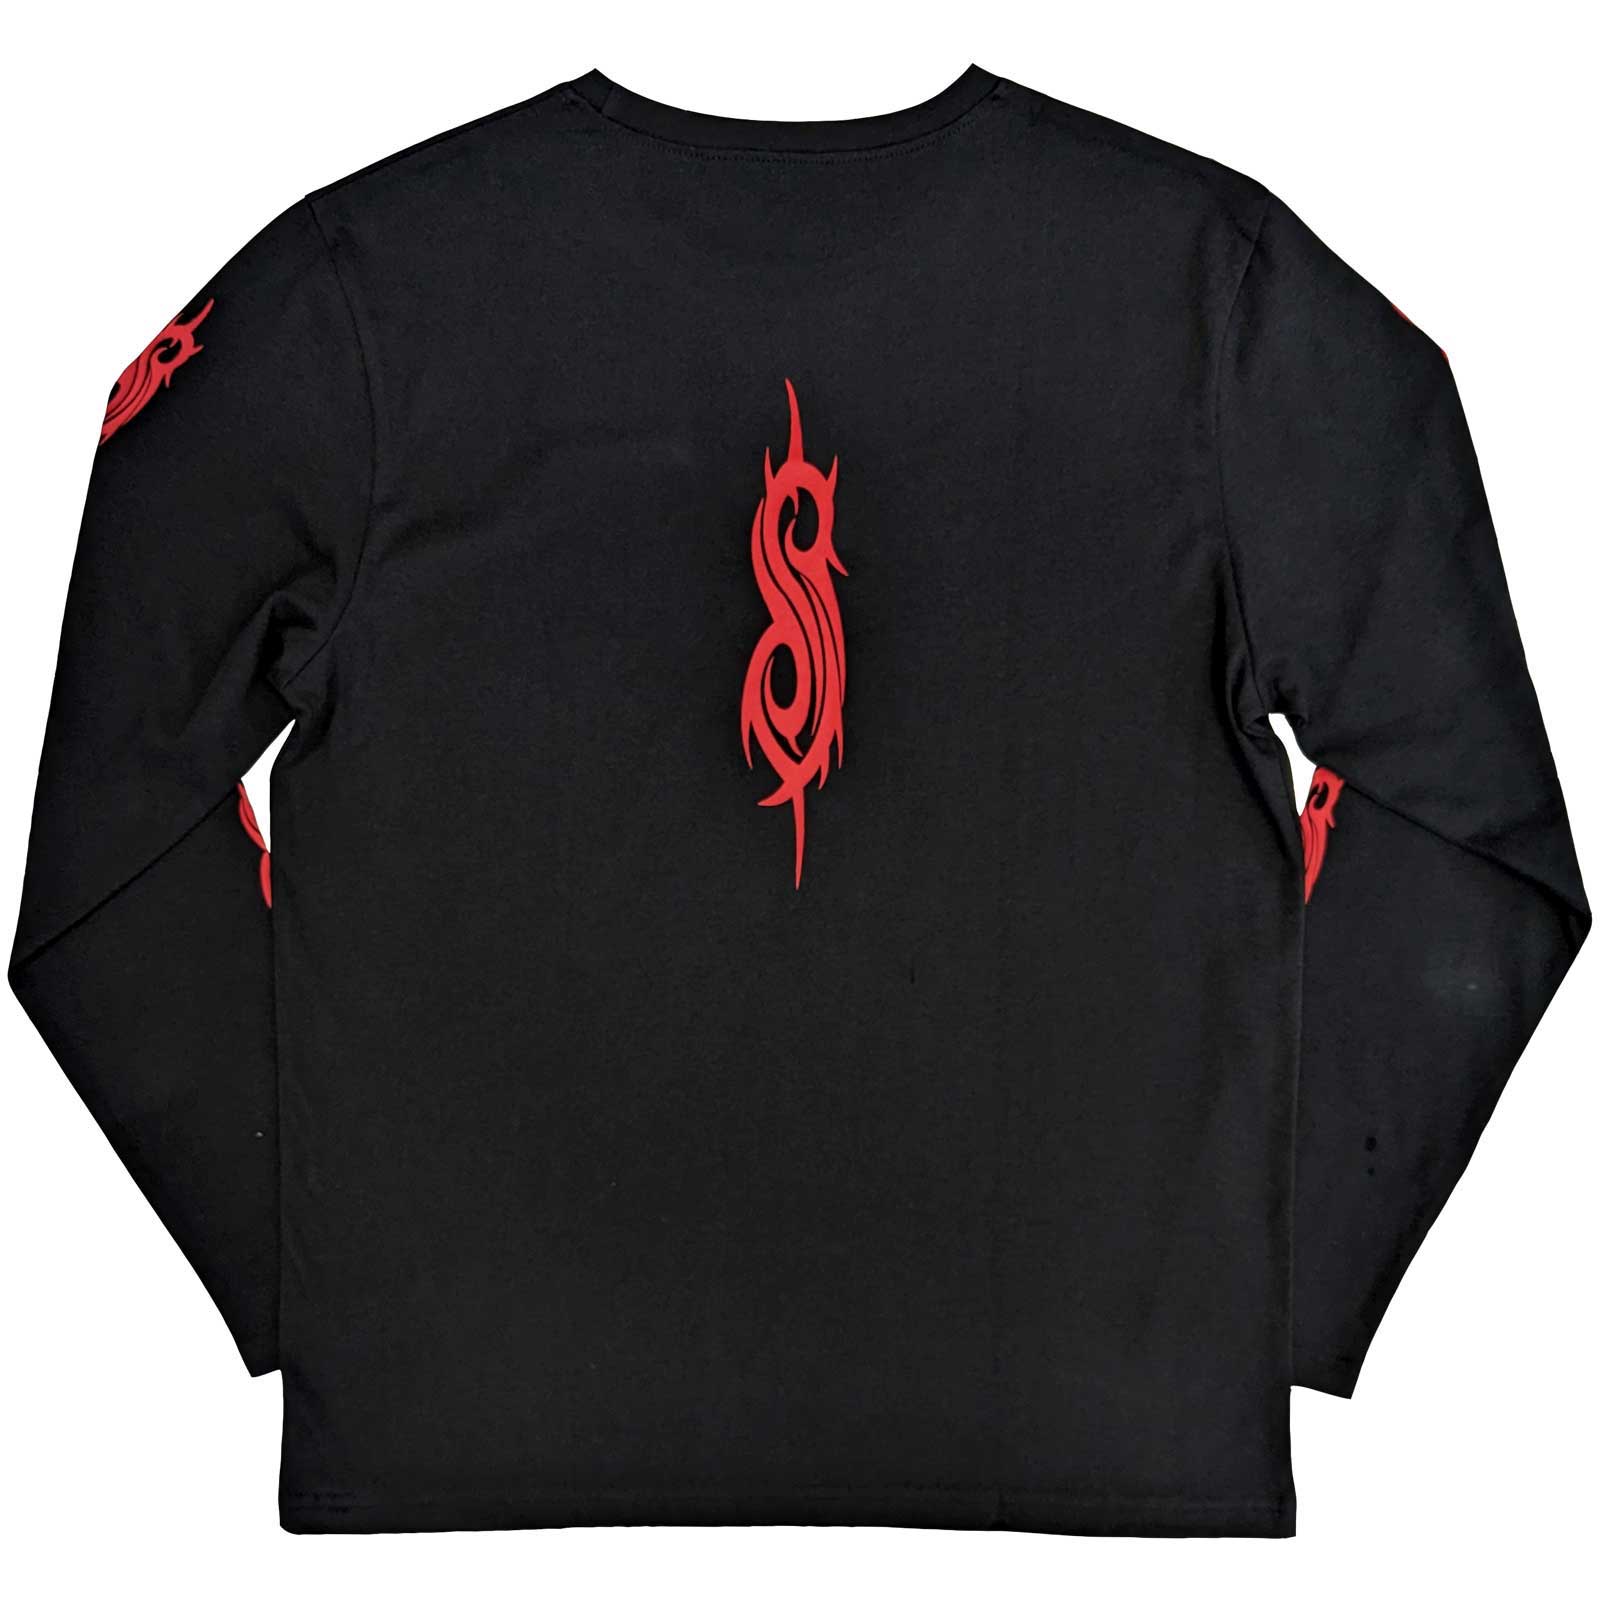 Slipknot Unisex Long Sleeved T-Shirt - Skeleton Flag (Back Print) - Unisex Official Licensed Design